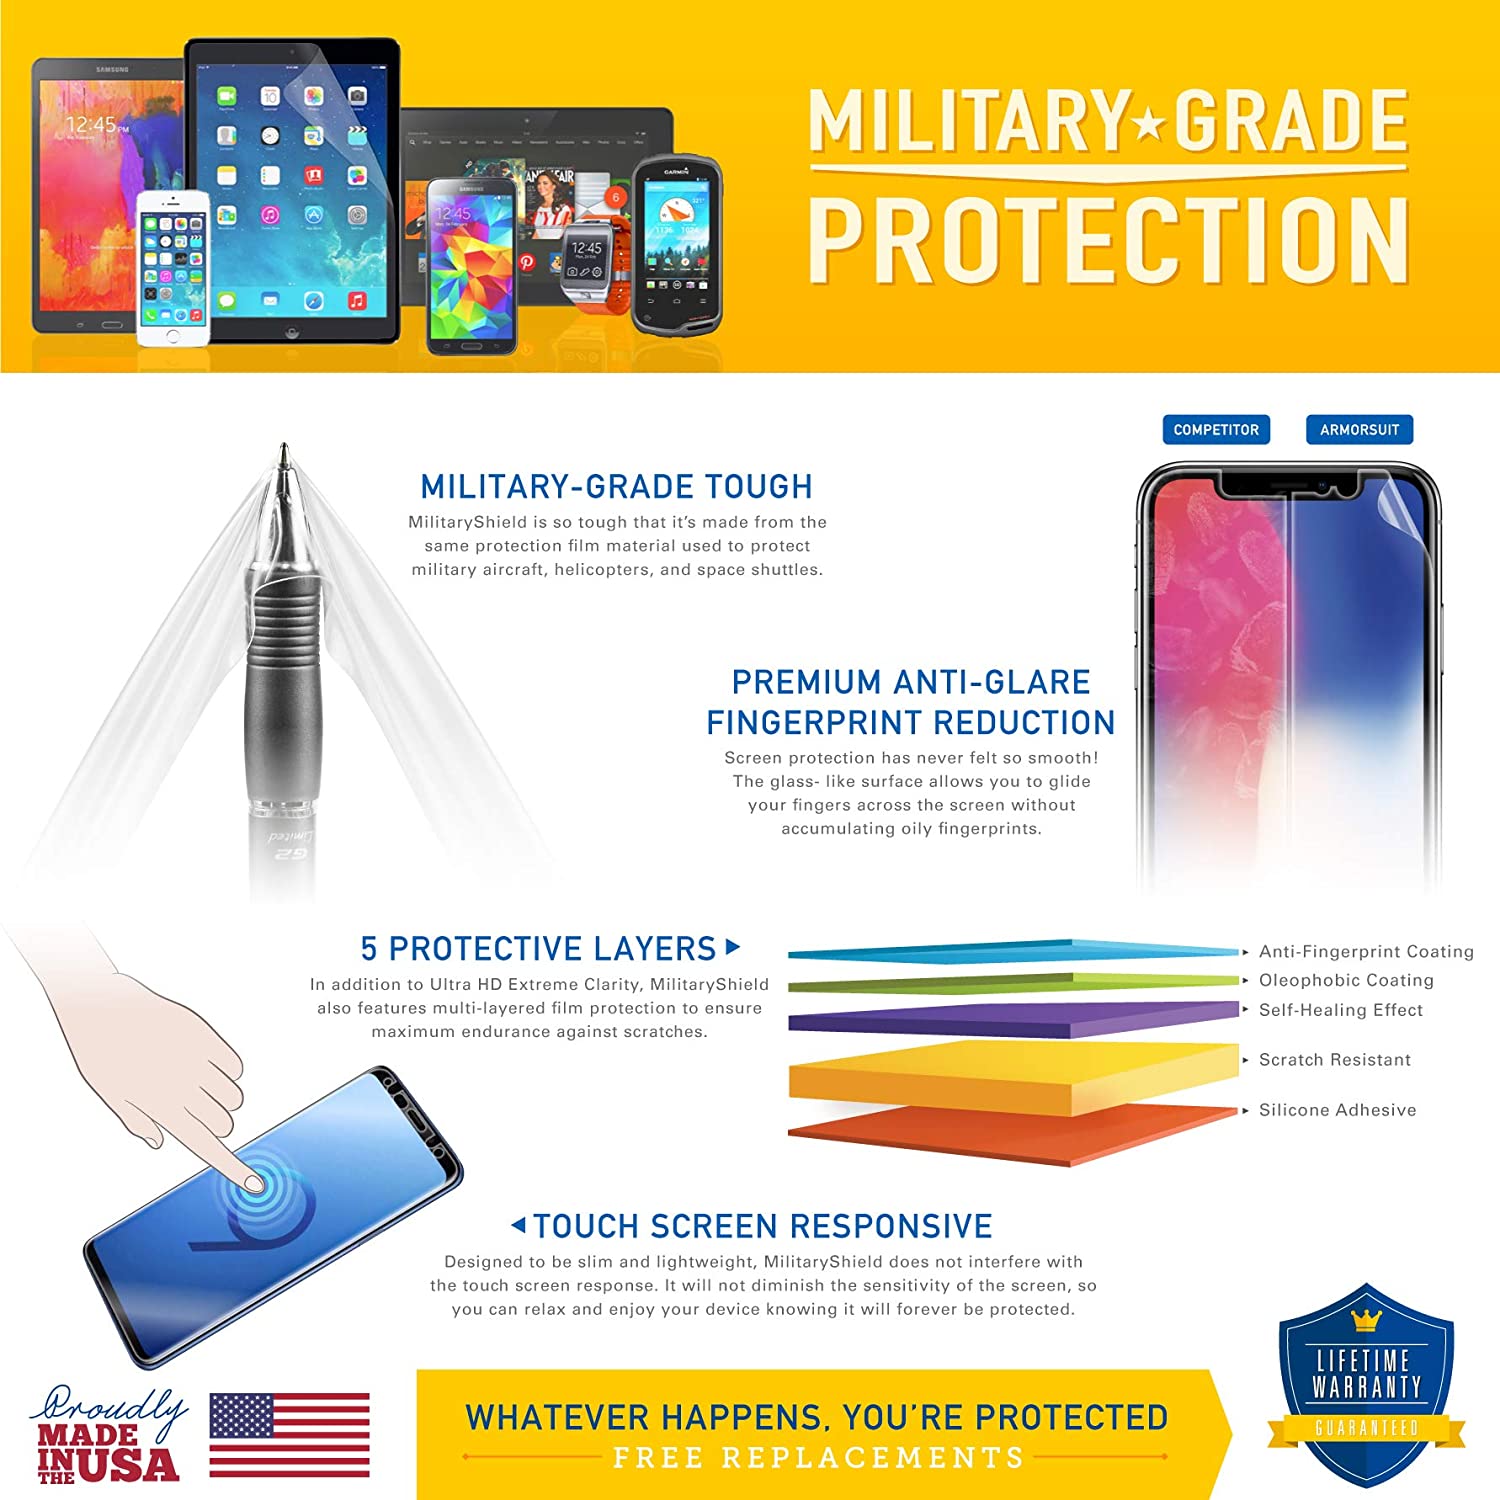 Samsung Galaxy Tab 3 8.0 (WIFI/3G/4G) International Version Full Body Skin Protector